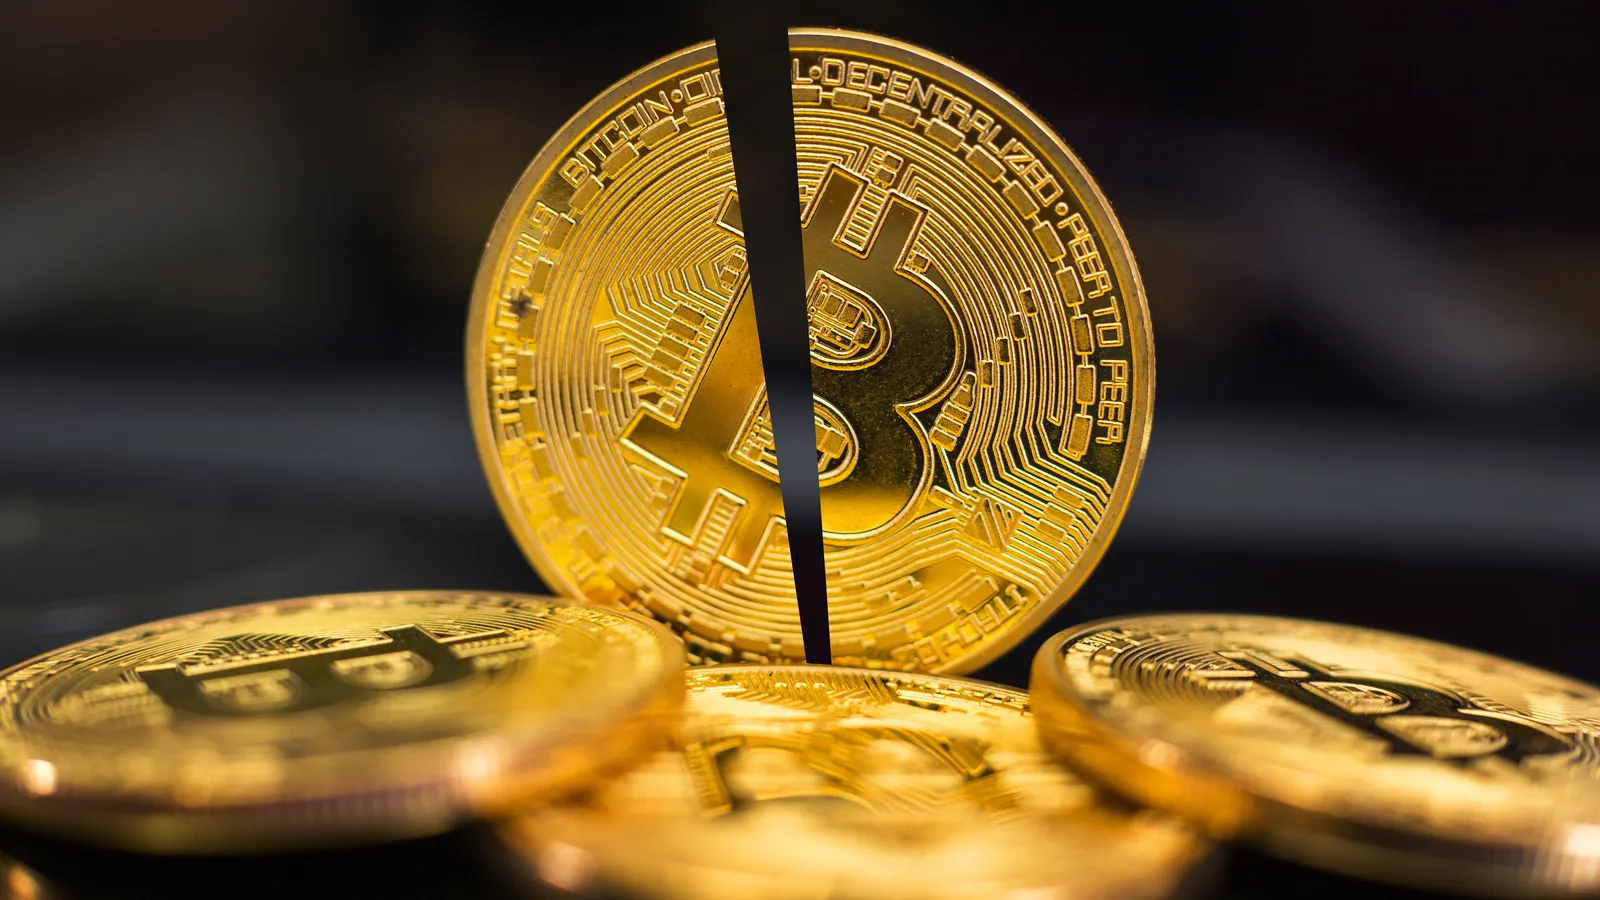 El halving de Bitcoin ocurrió ayer. Imagen: Shutterstock.